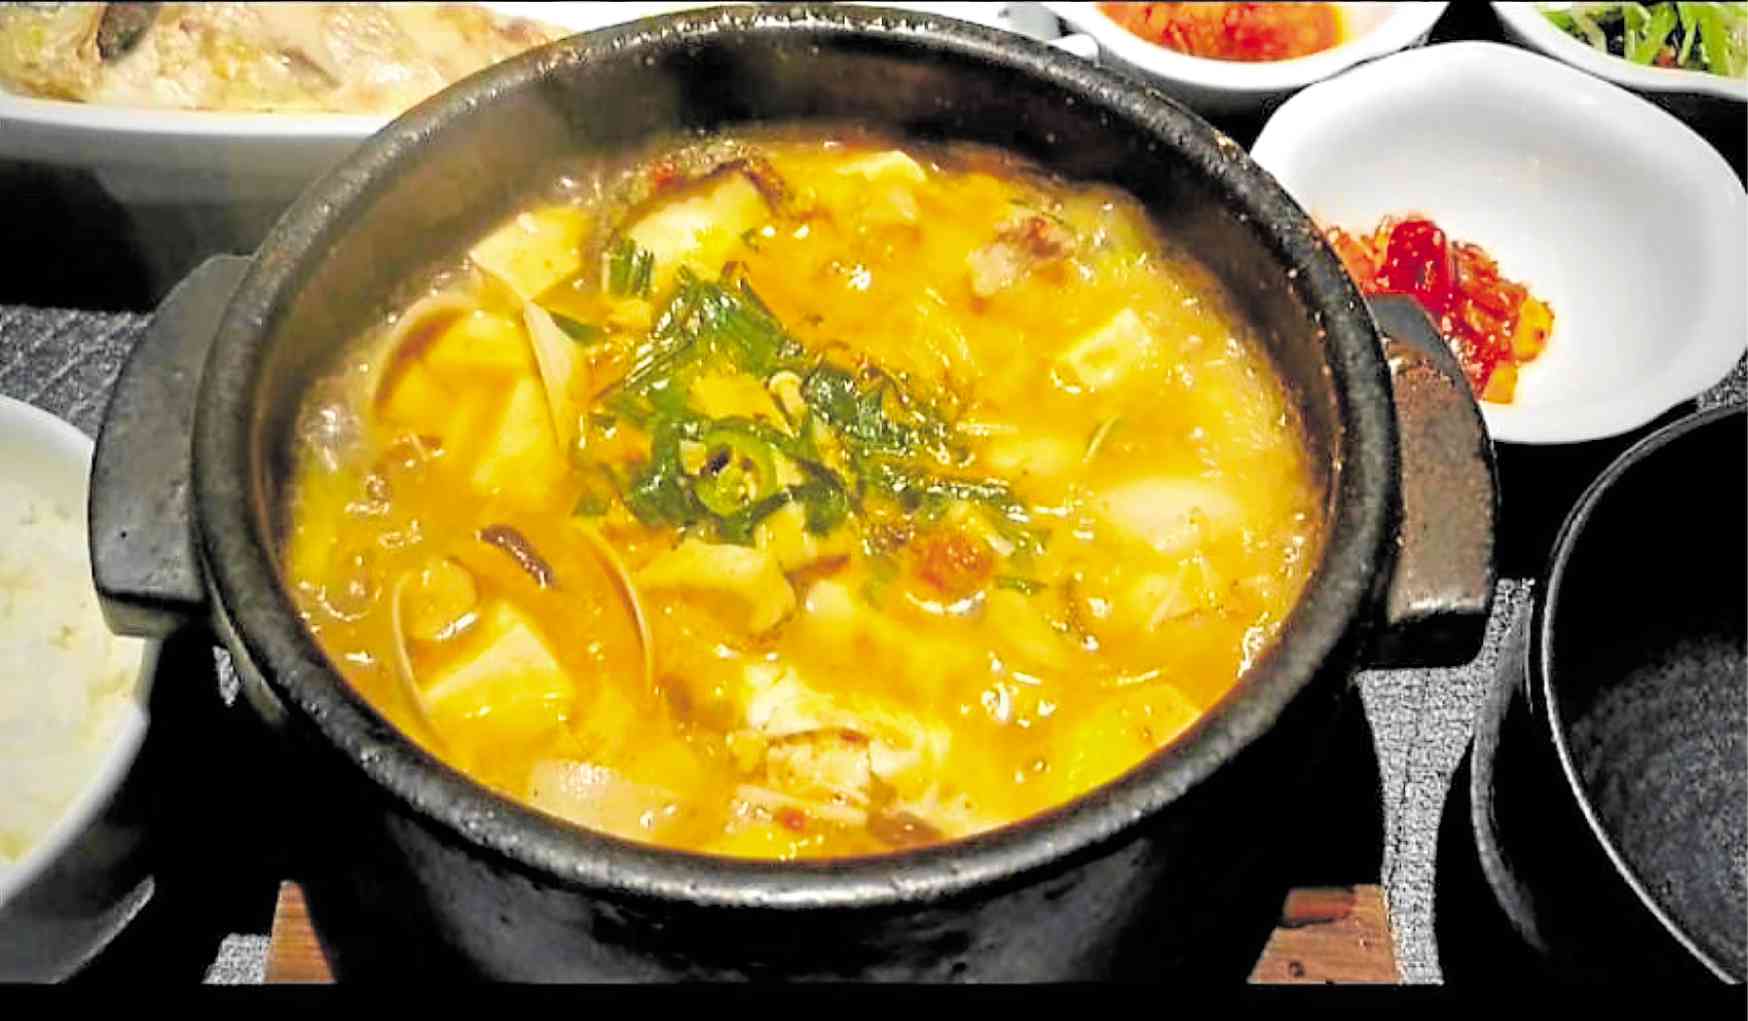 “Deonjang-jjigae” or soybean stew